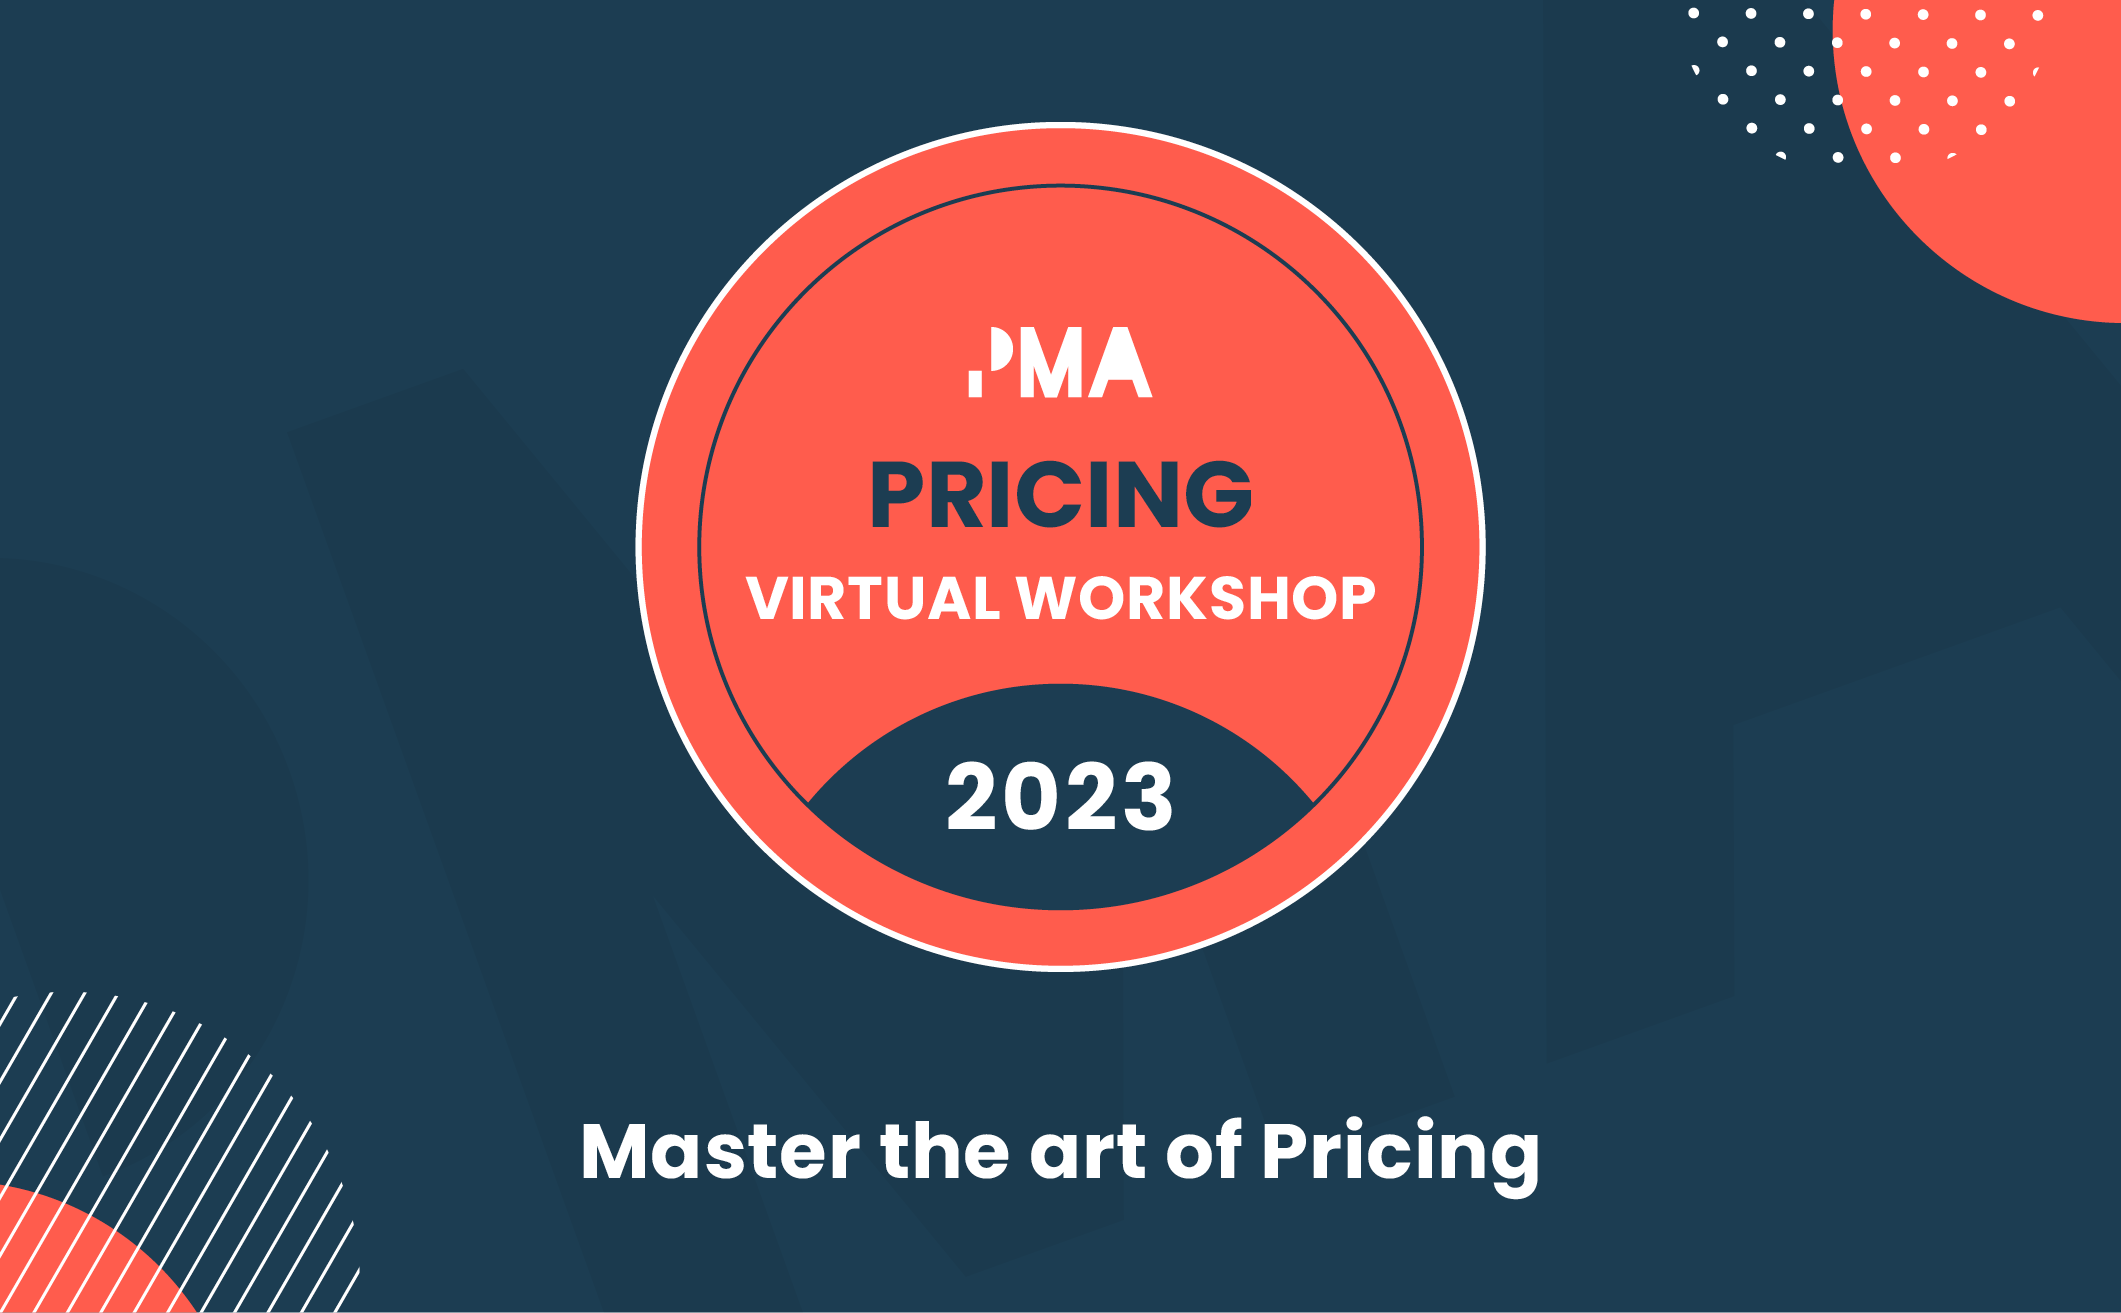 Pricing virtual workshop